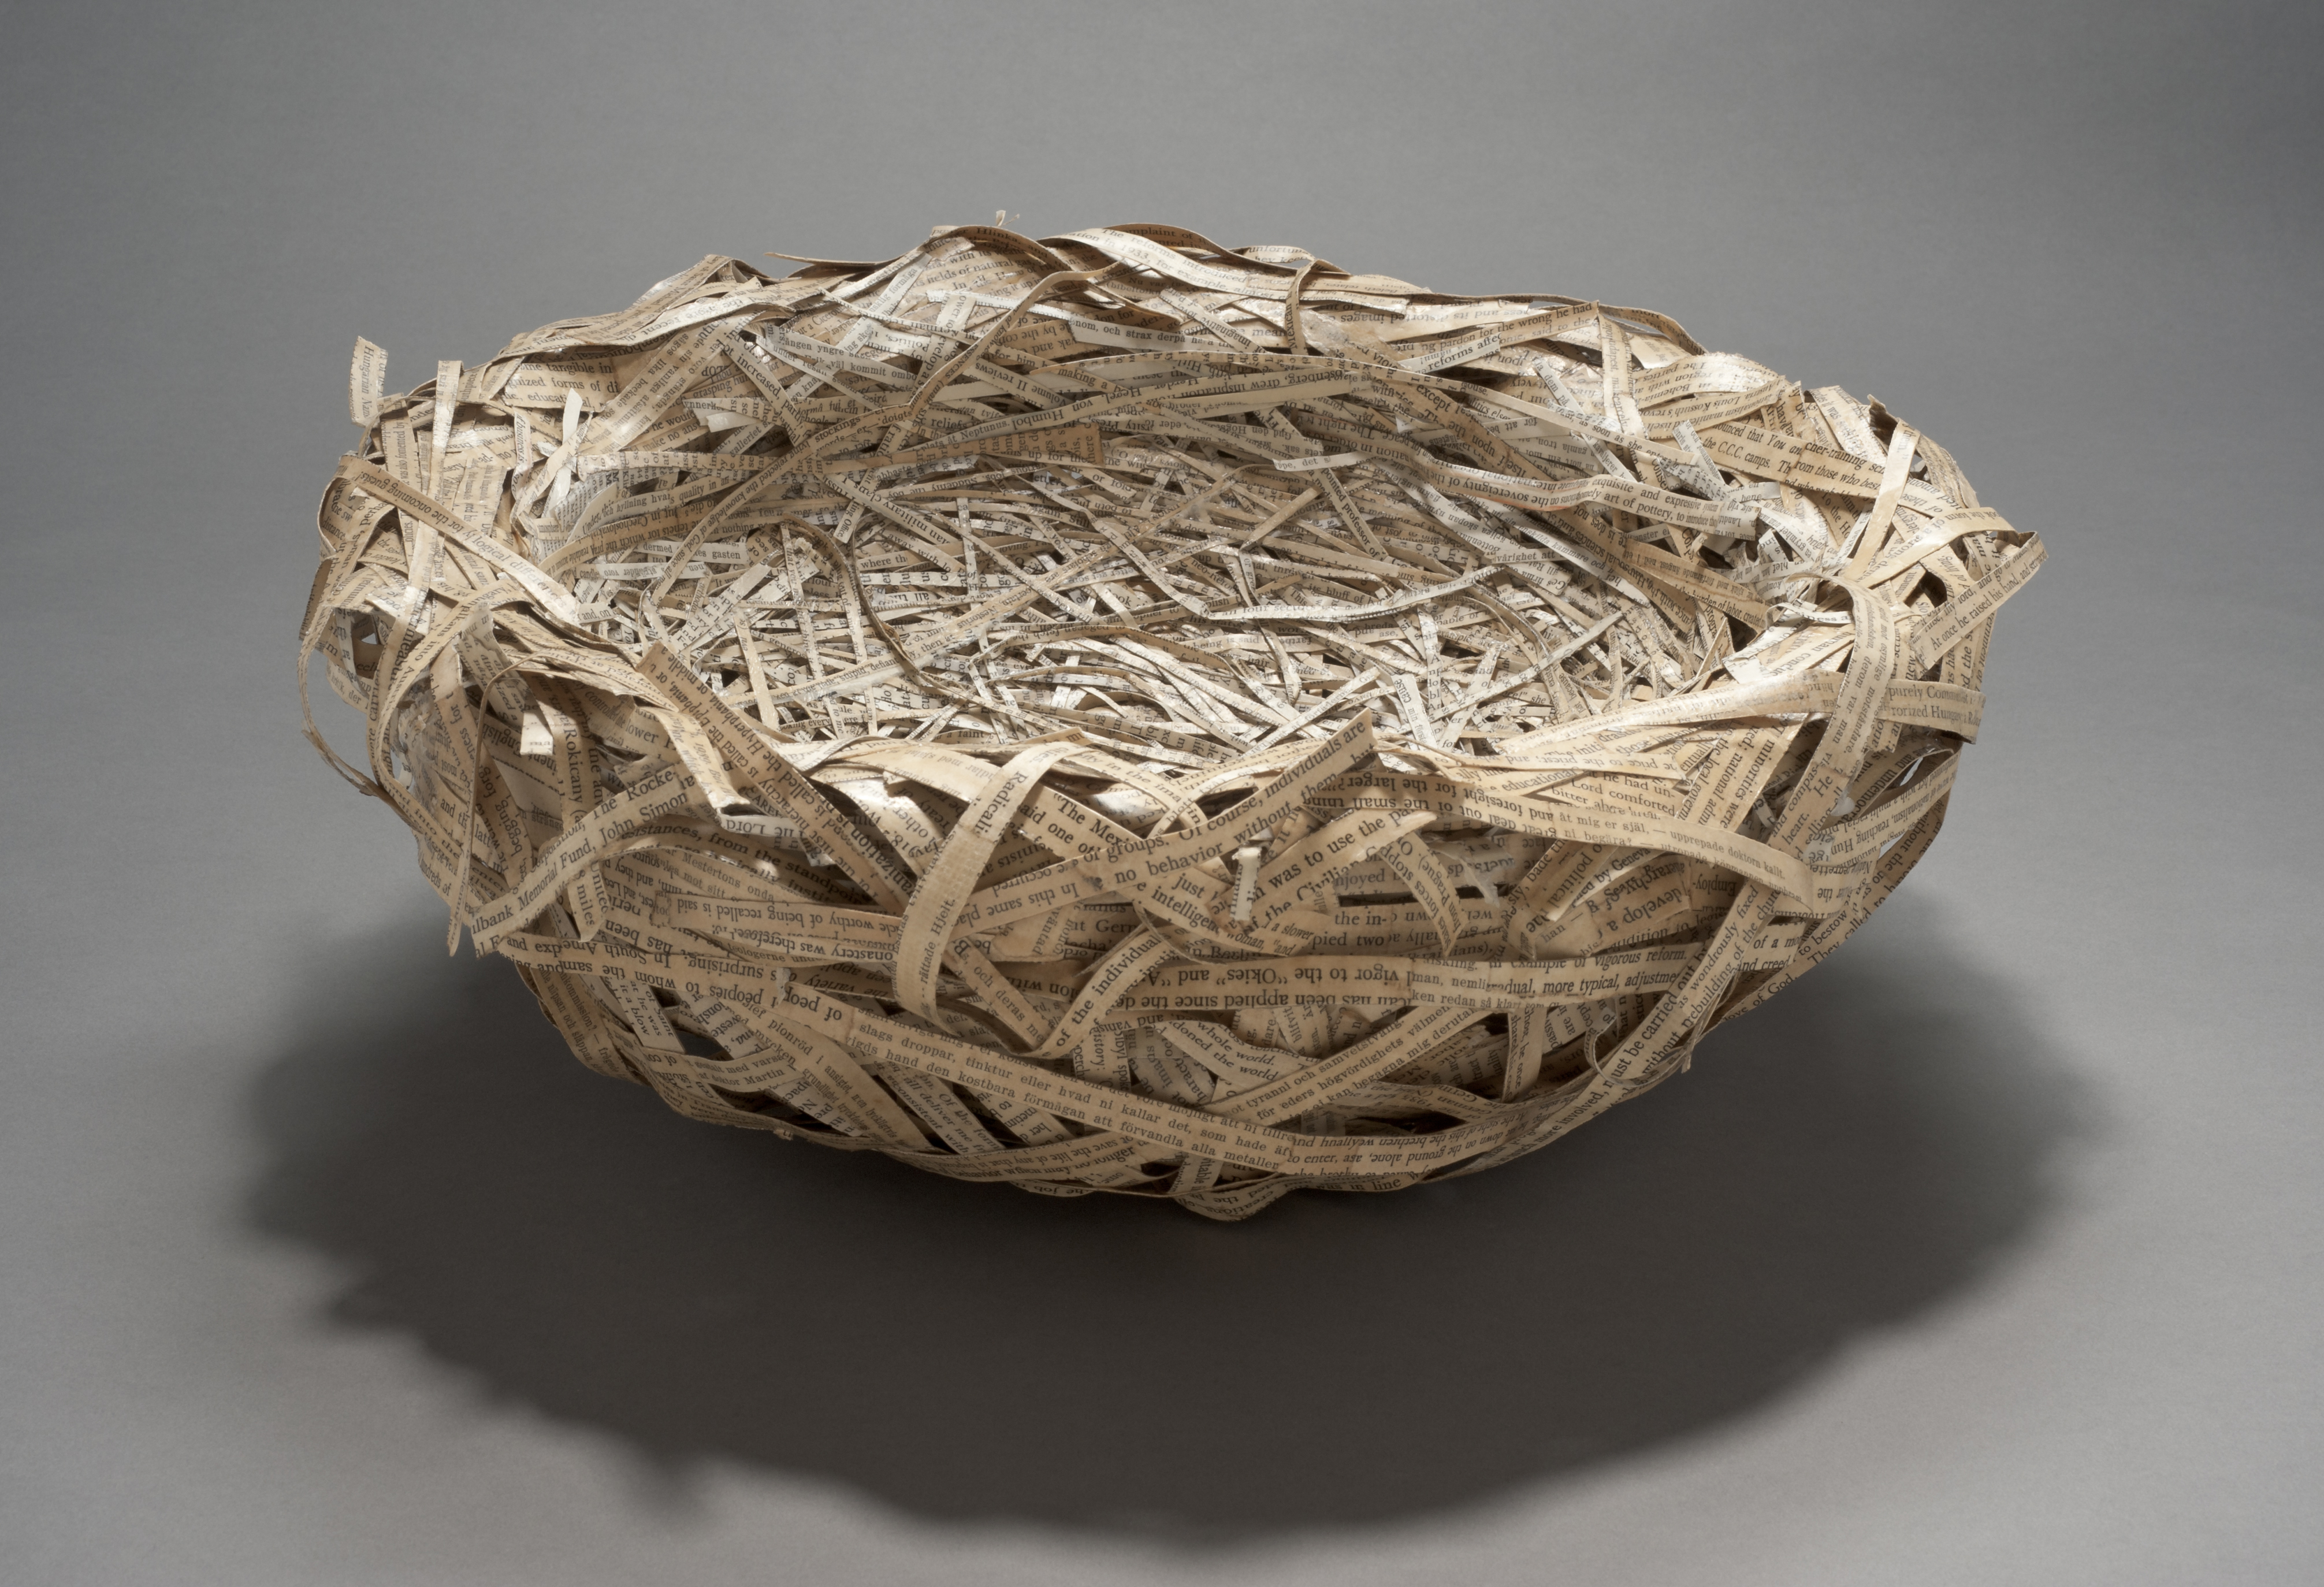 Woven bird nest artwork